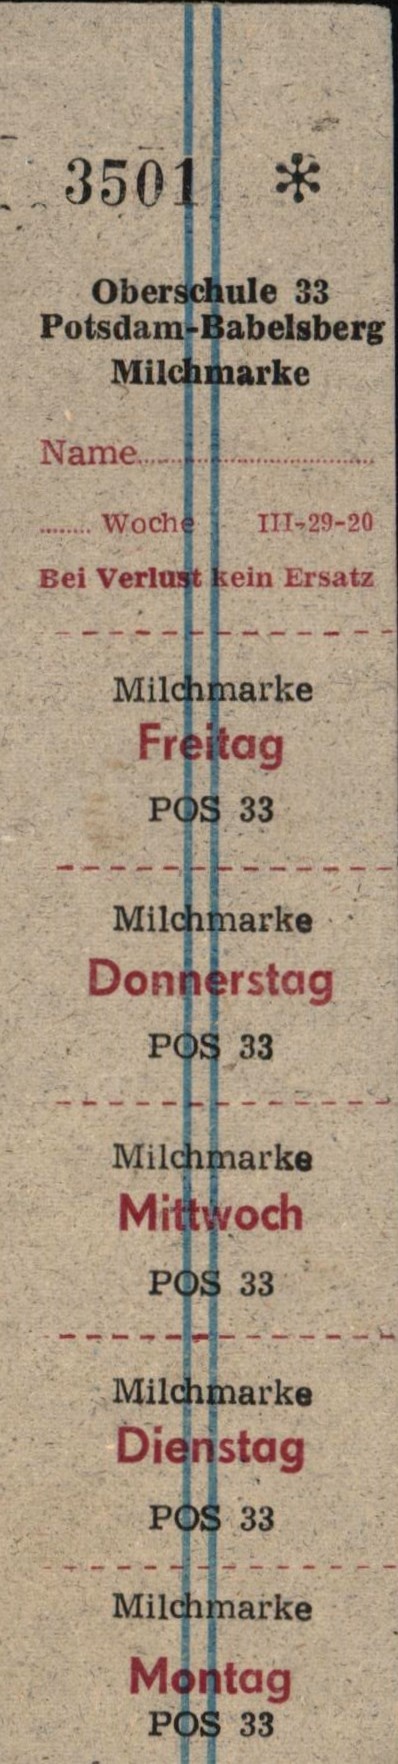 Milchmarken POS Potsdam Babelsberg (Museum Utopie und Alltag. Alltagskultur und Kunst aus der DDR CC BY-NC-SA)